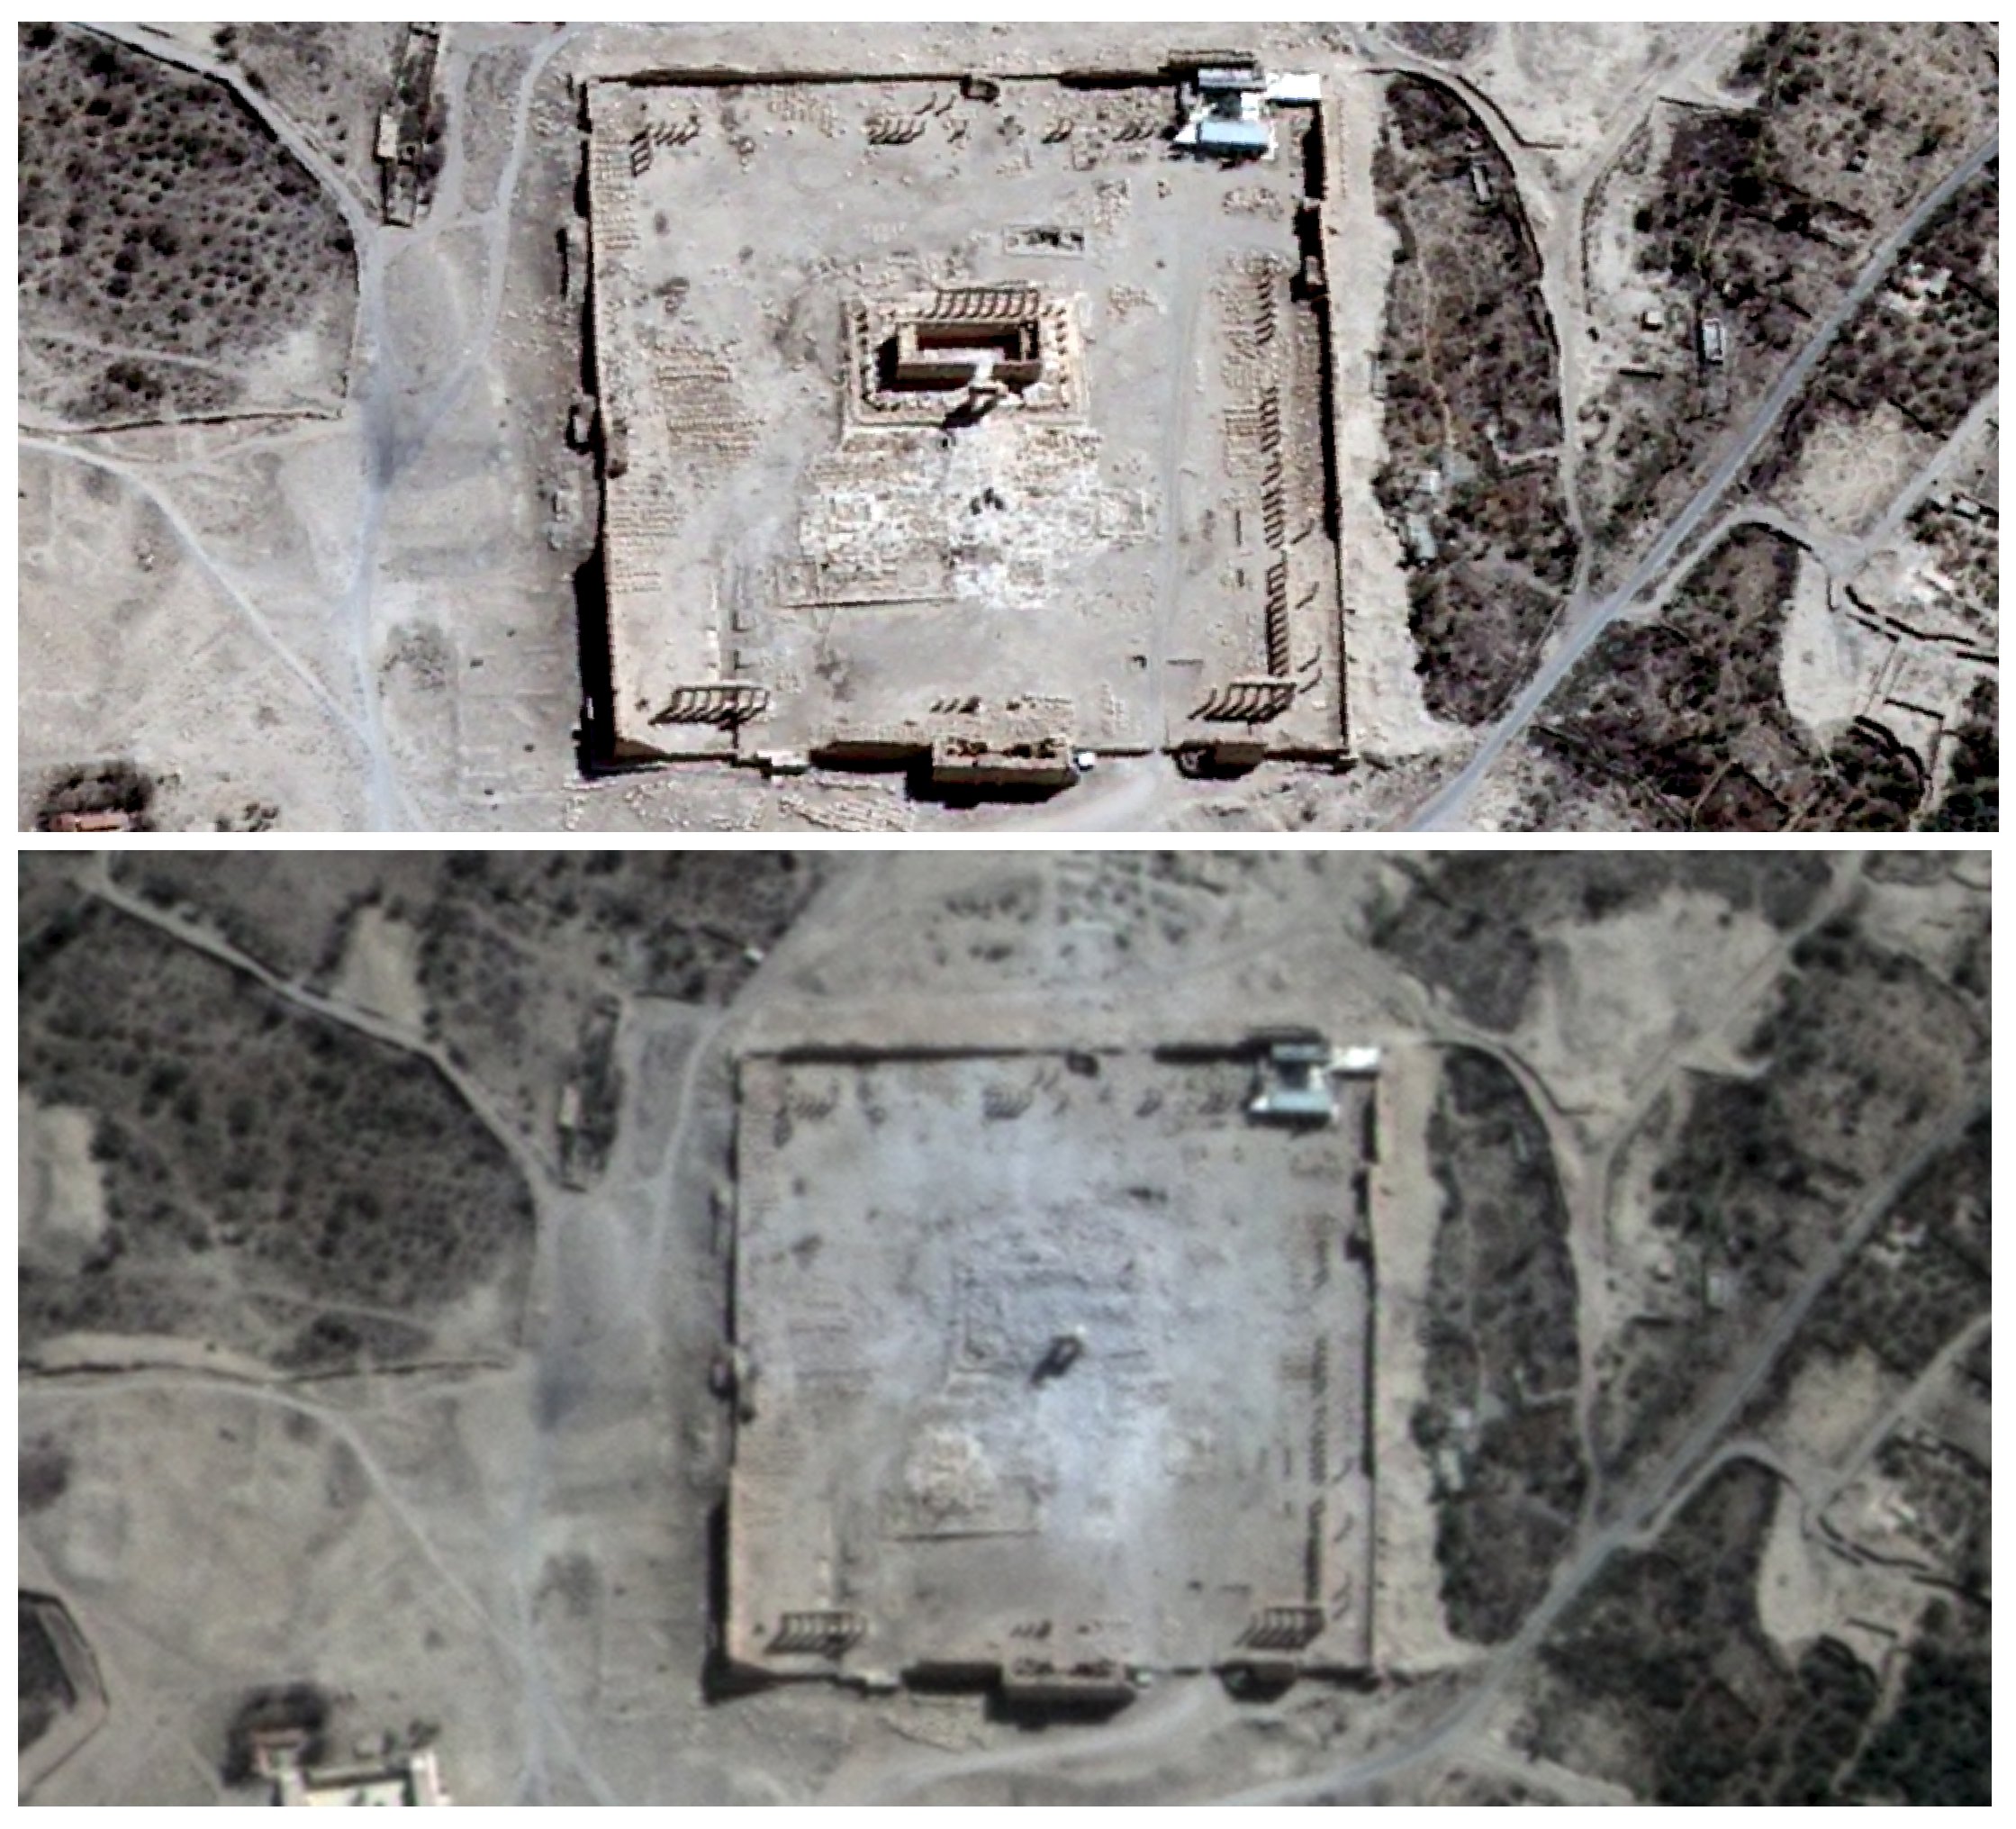 Σχεδόν πλήρης η καταστροφή του δεύτερου ναού στην Παλμύρα – εικόνες